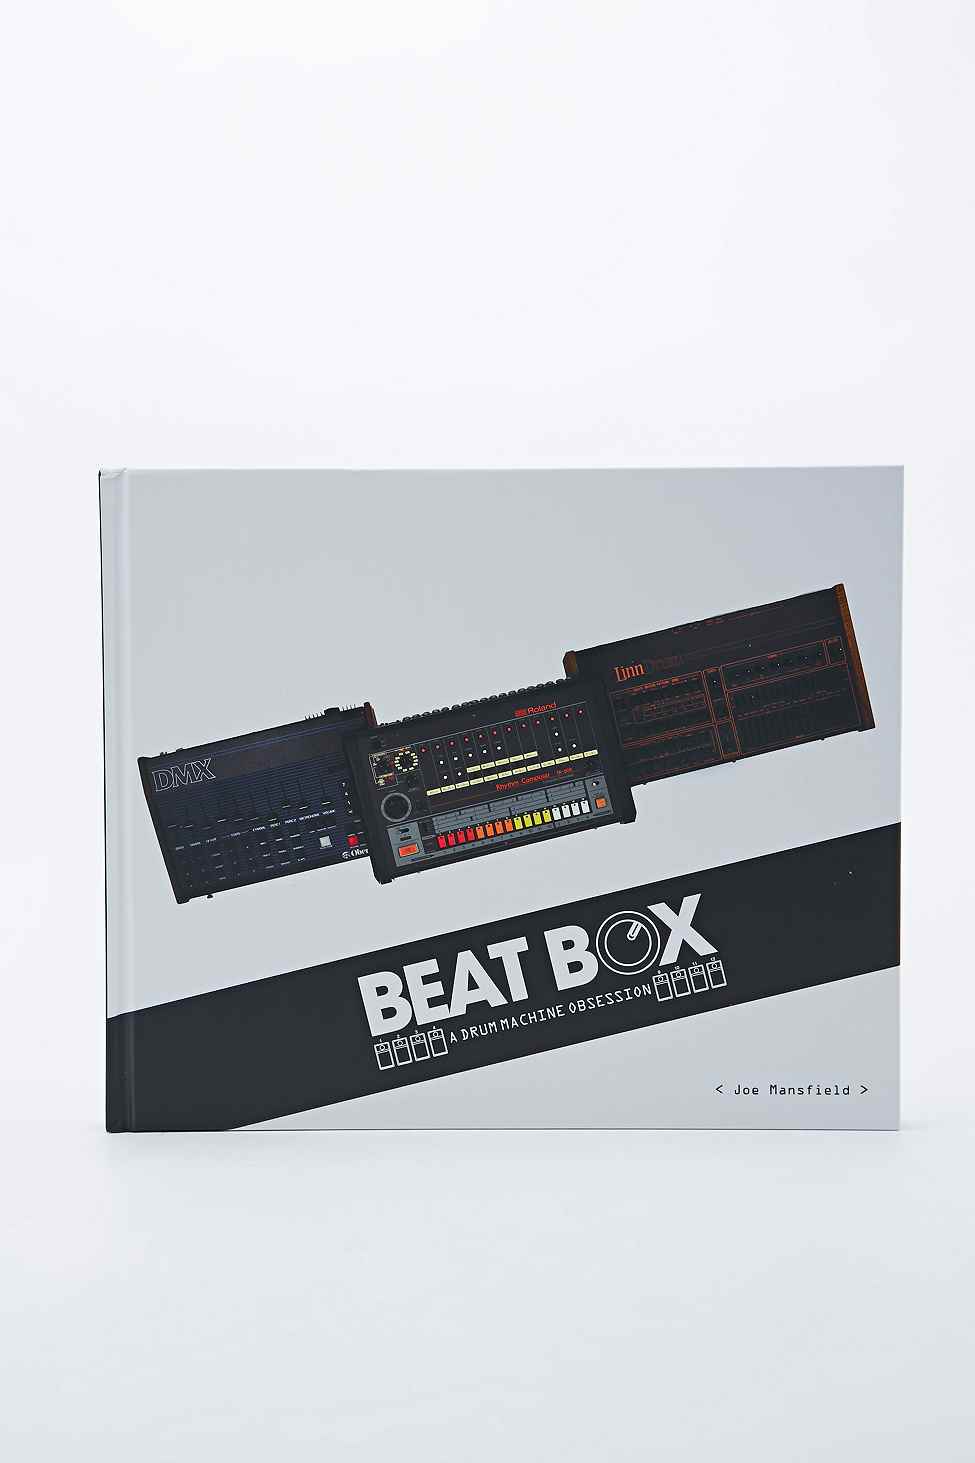 Livre Beat Box: A Drum Machine Obsession, toutes les informations sur 75 boîtes à rythme ainsi que 200 photos et images d'archives uniques, 59€